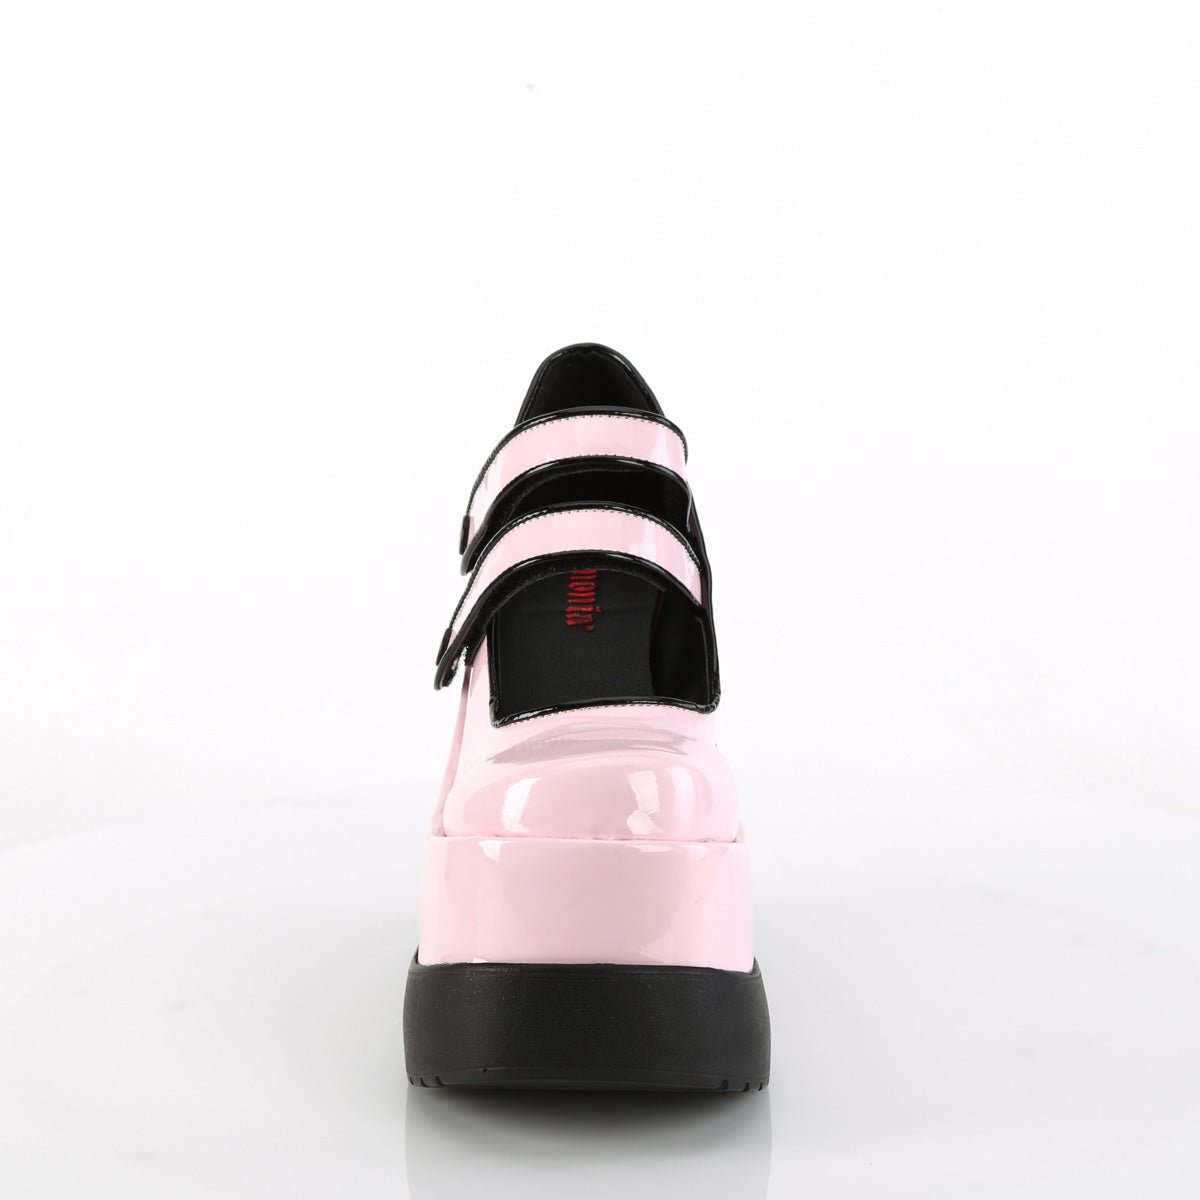 Too Fast | Demonia VOID-37 B. Pink Pat Platform Wedges